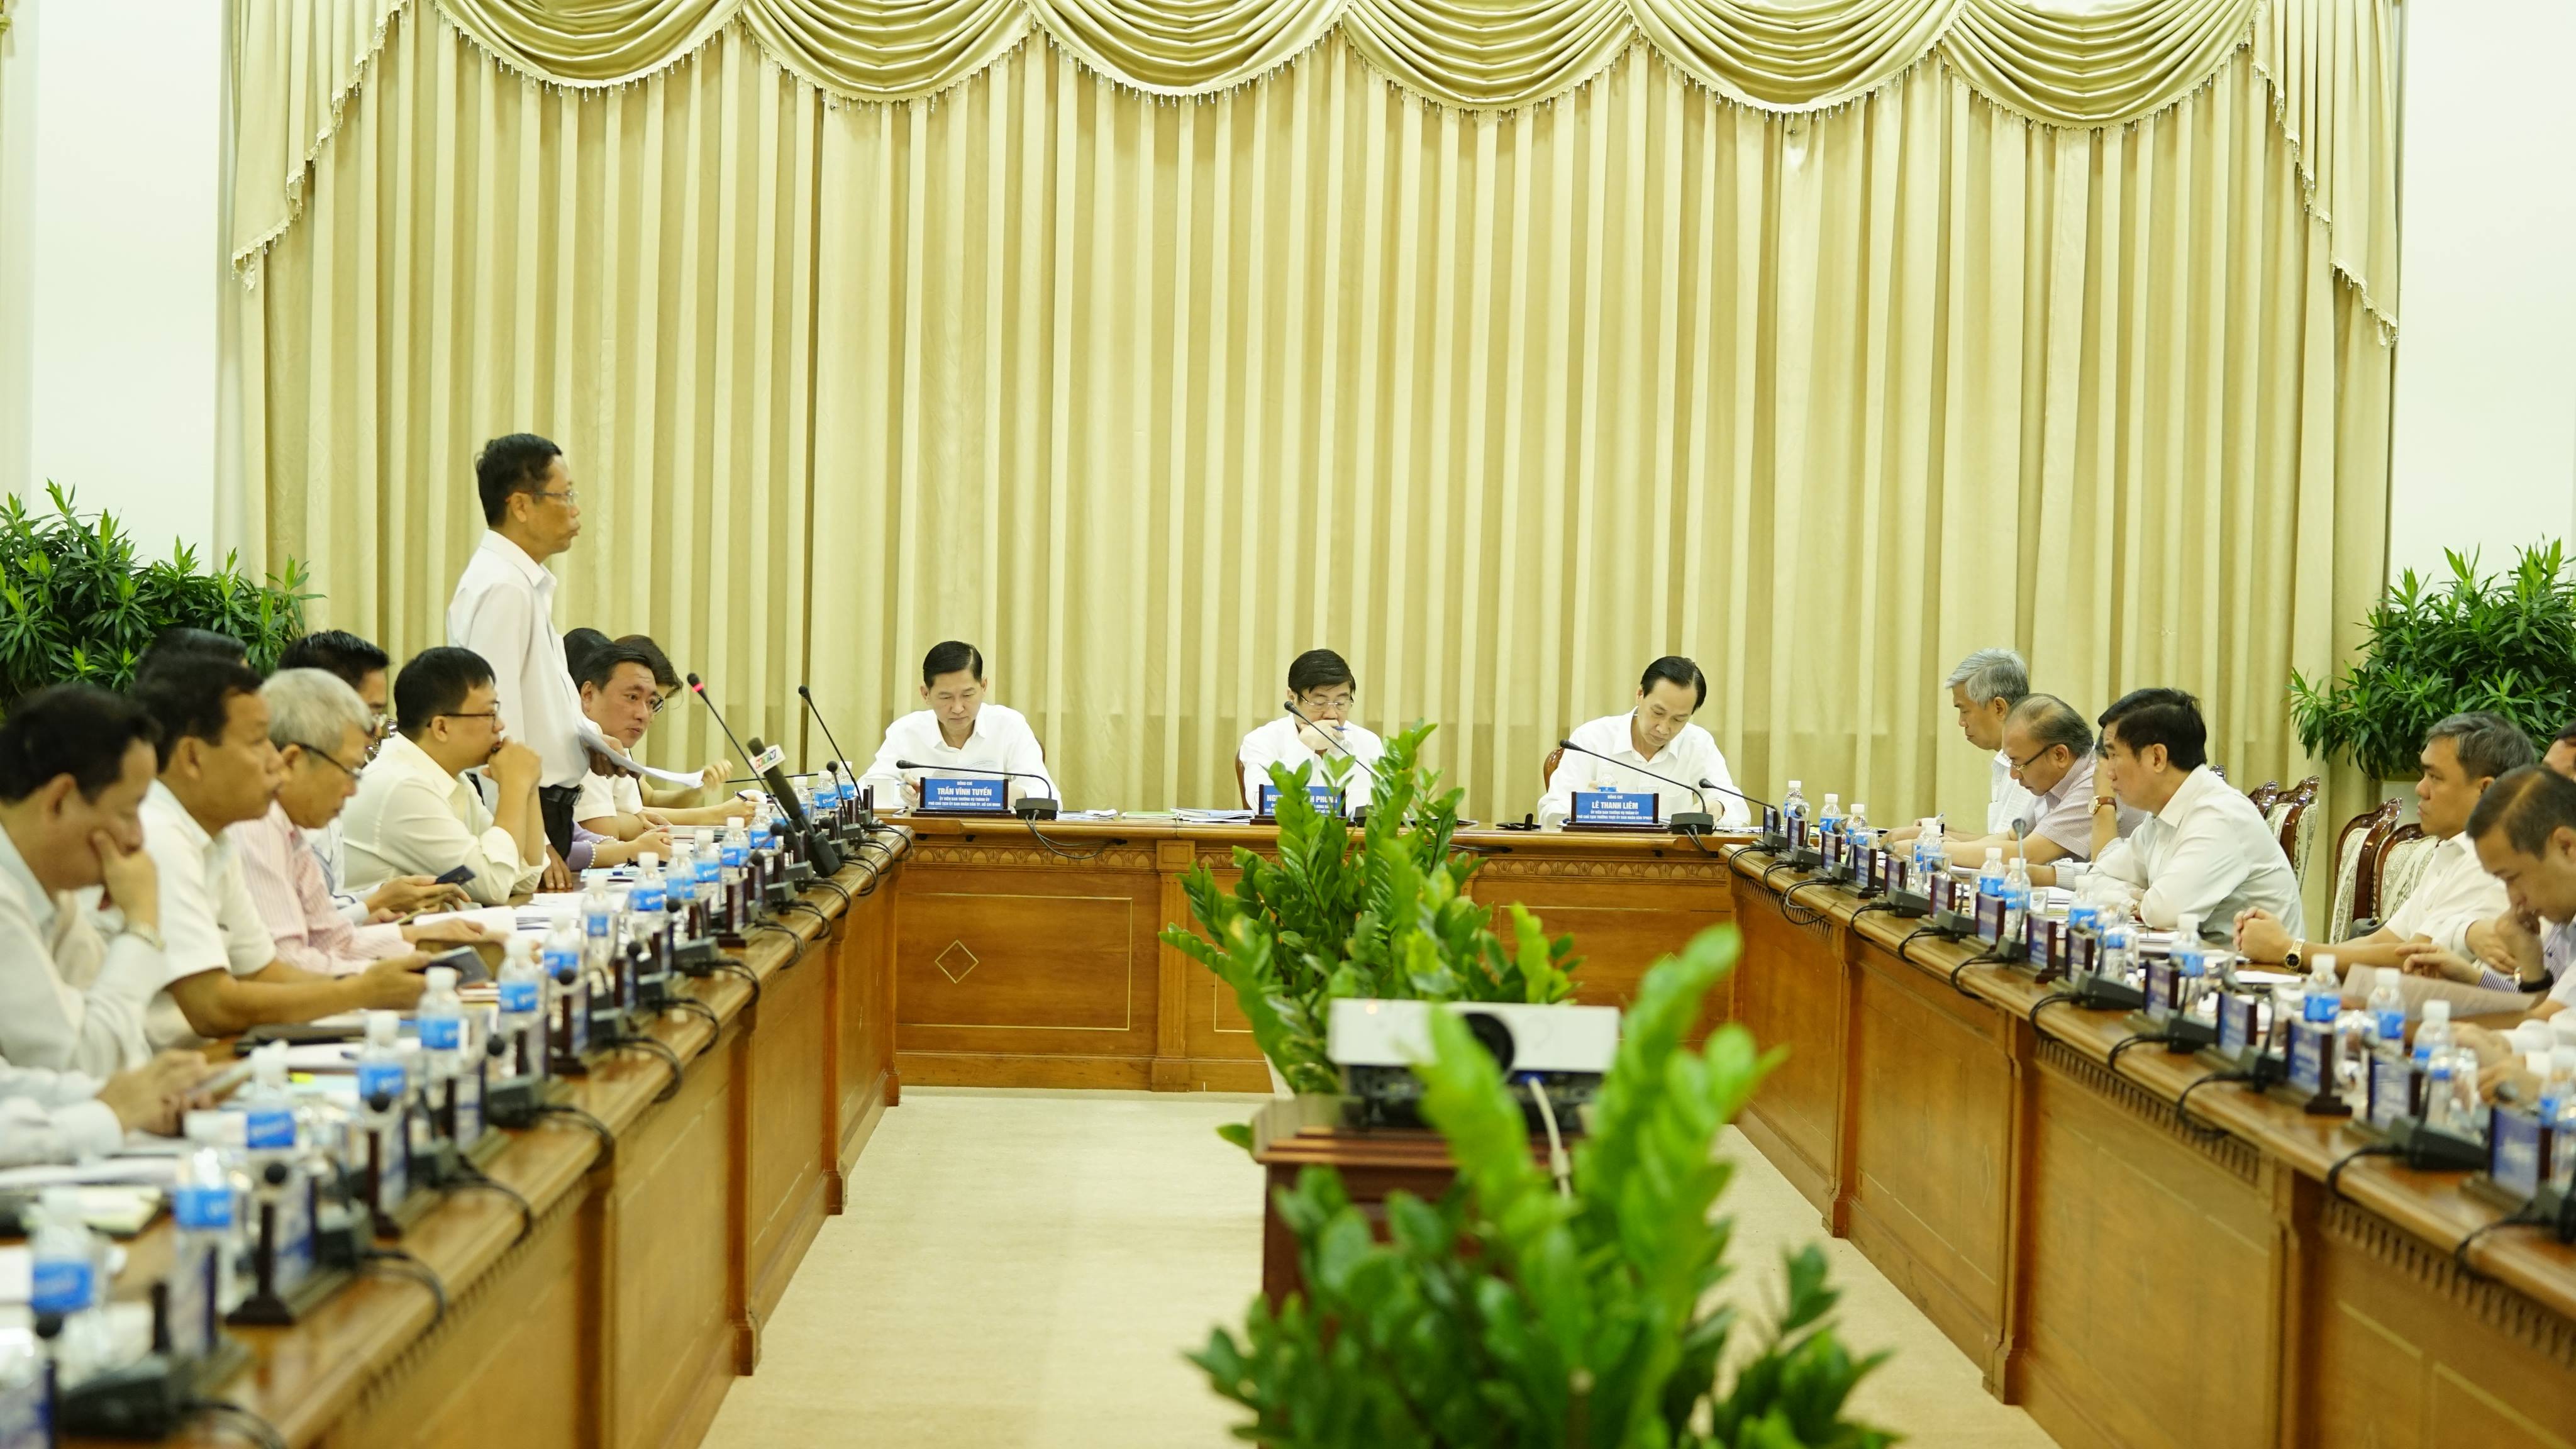 Nóng 24h qua: UBND TP.HCM khuyết lãnh đạo, chủ tịch Nguyễn Thành Phong nói gì? - 1